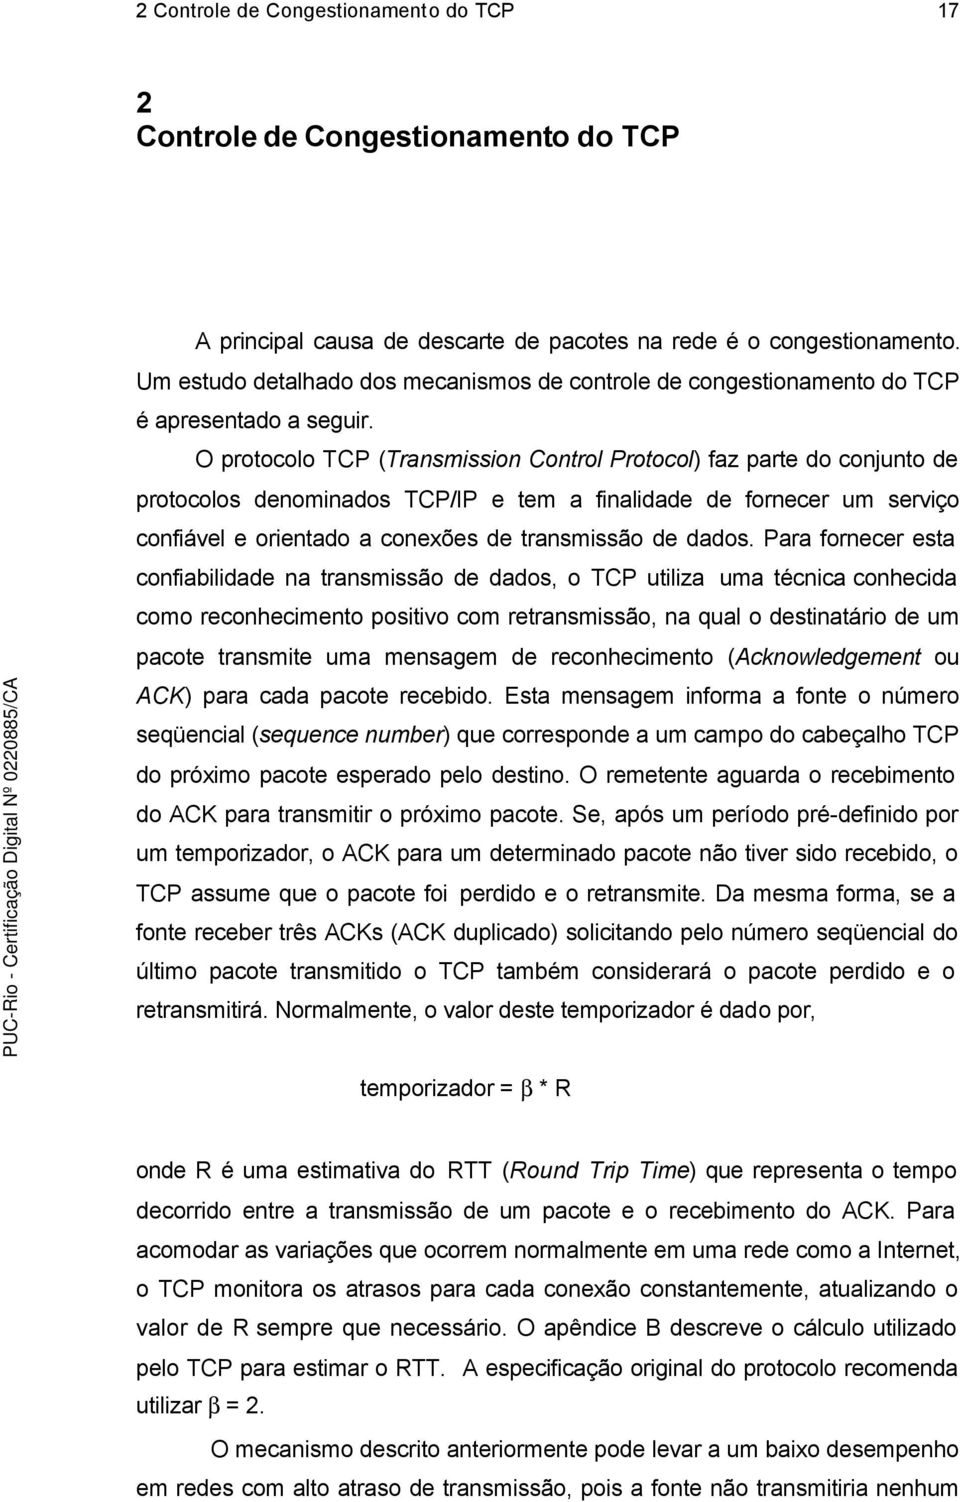 O protocolo TCP (Transmission Control Protocol) faz parte do conjunto de protocolos denominados TCP/IP e tem a finalidade de fornecer um serviço confiável e orientado a conexões de transmissão de